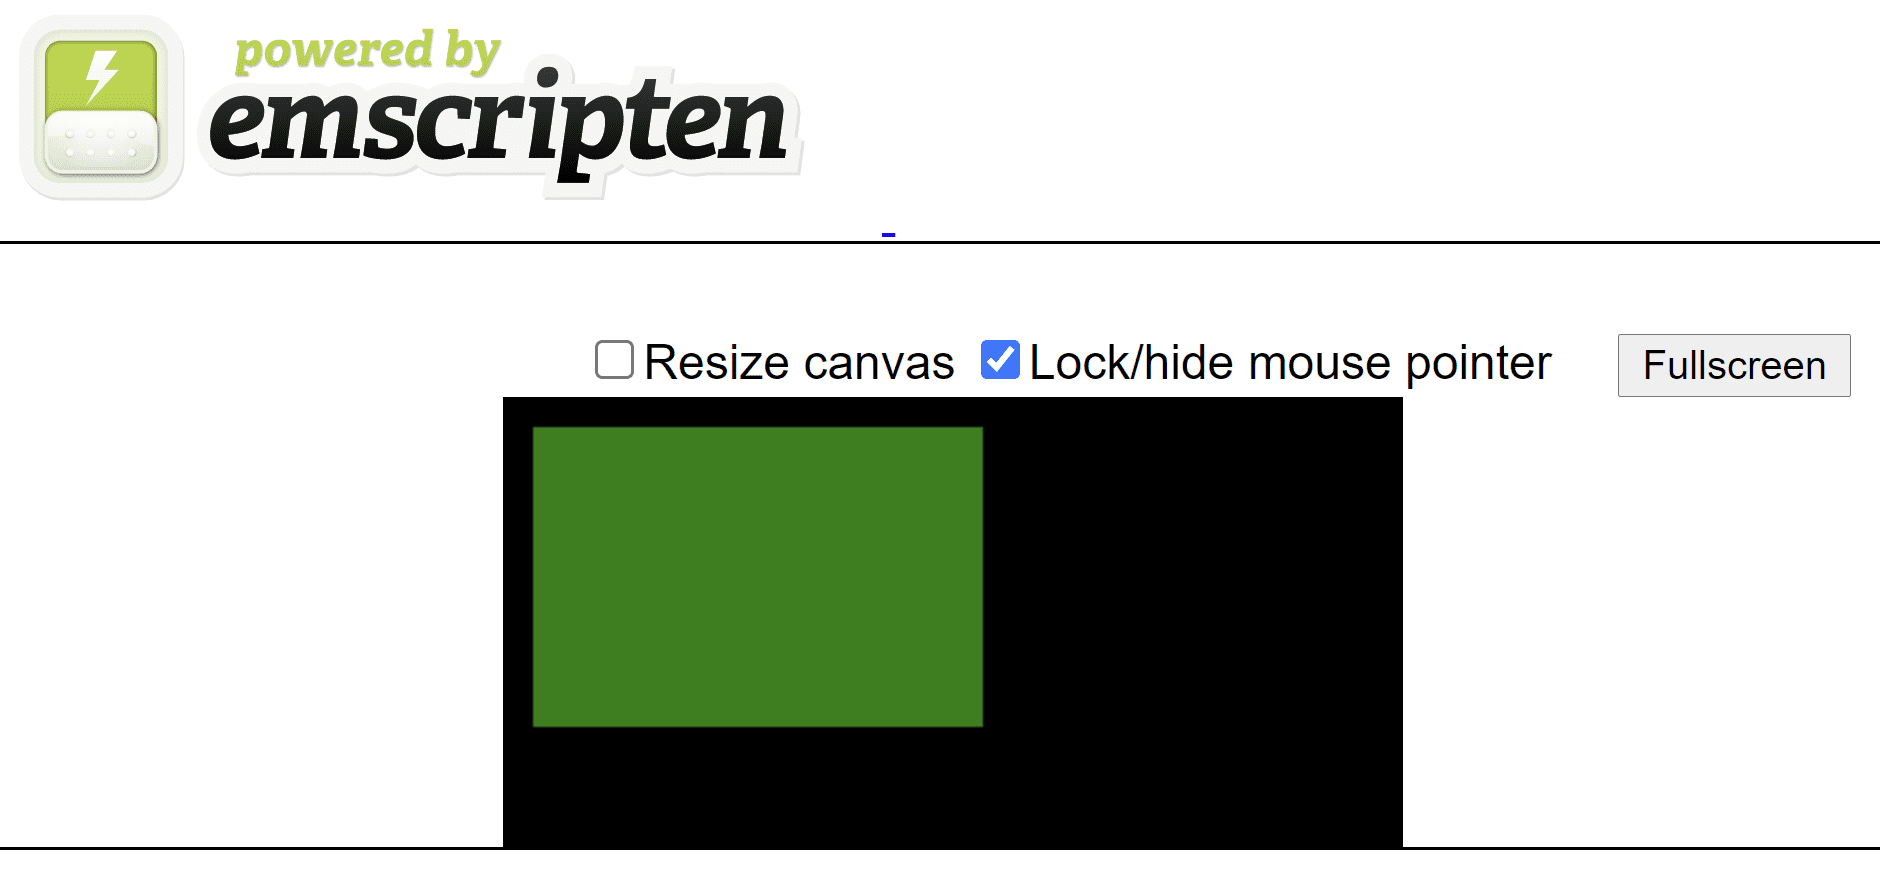 由 Emscripten 生成的 HTML 网页，在黑色画布上显示一个绿色矩形。